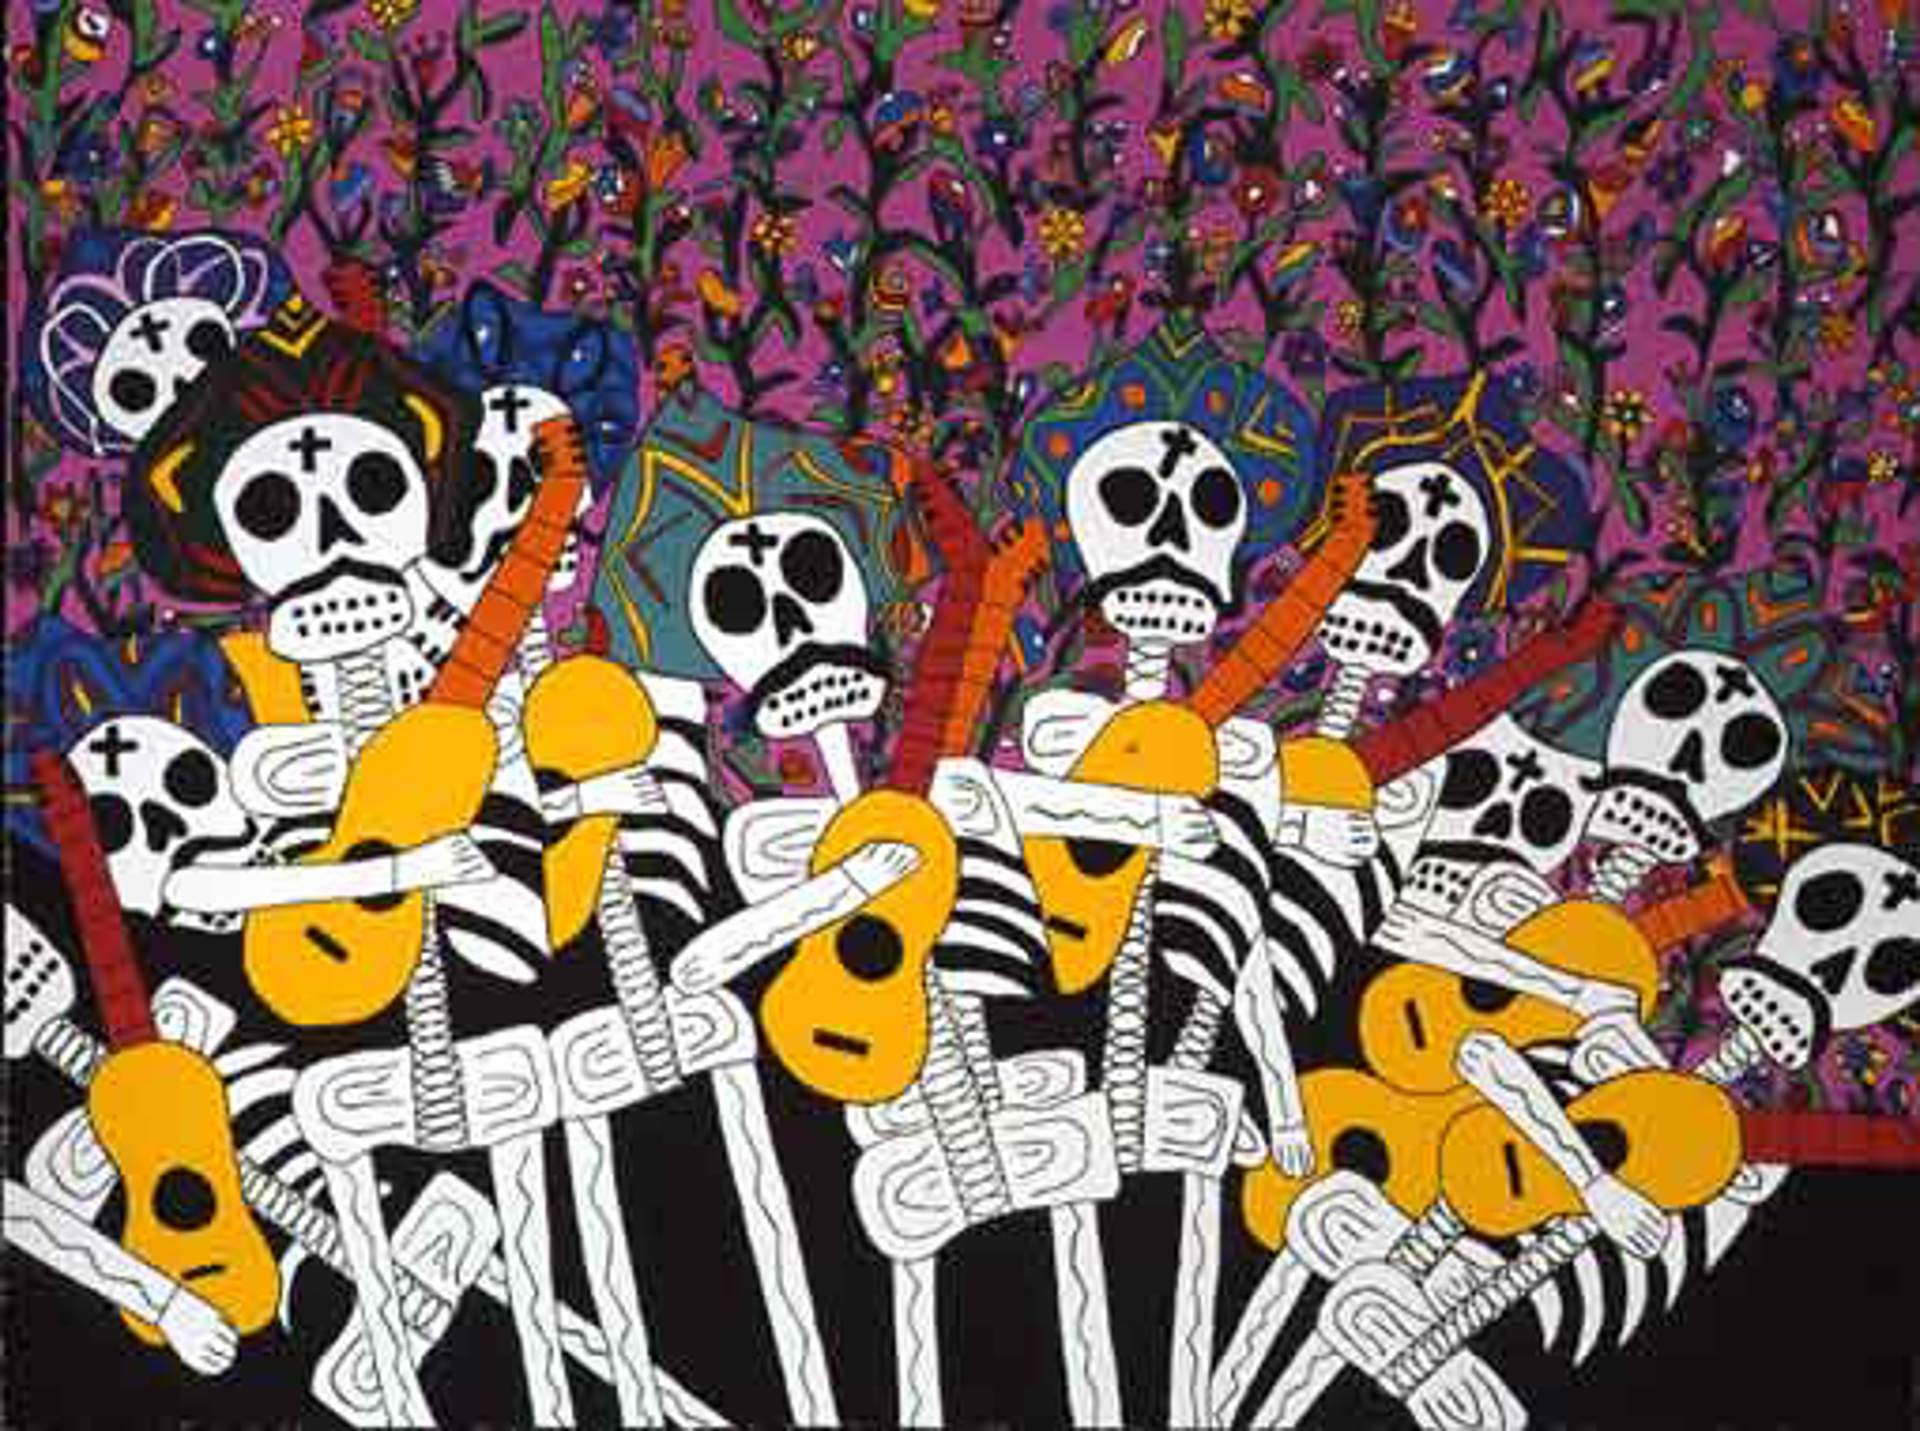 Hechale (Play It!) Skeleton Band by Eduardo Oropeza